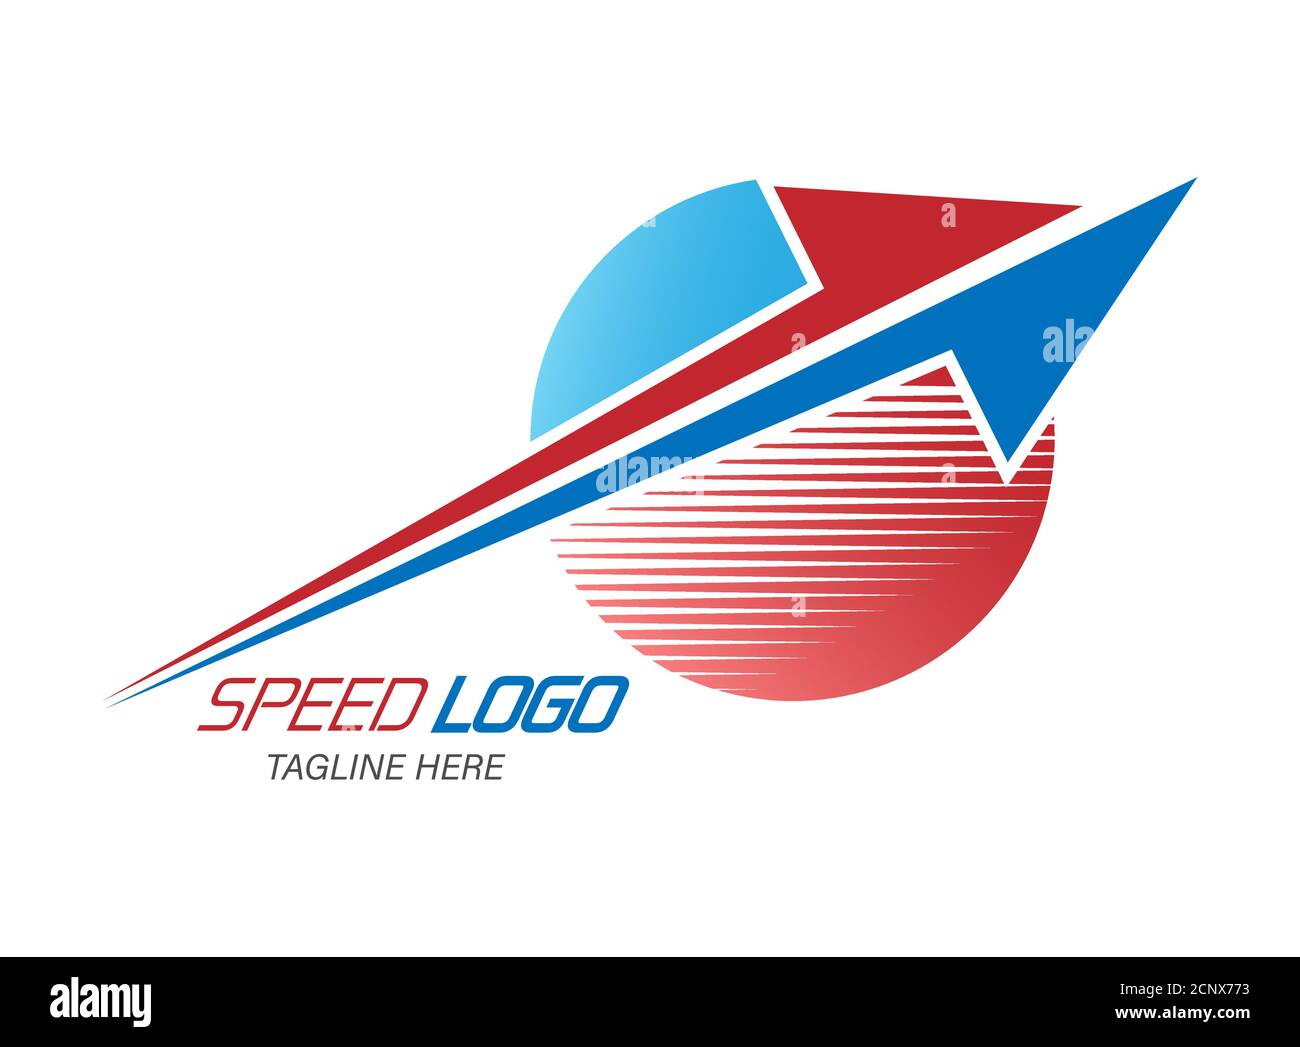 Speed logo.une flèche rouge et bleue divisée avec un demi-cercle. Illustration vectorielle simple isolée sur fond blanc Illustration de Vecteur